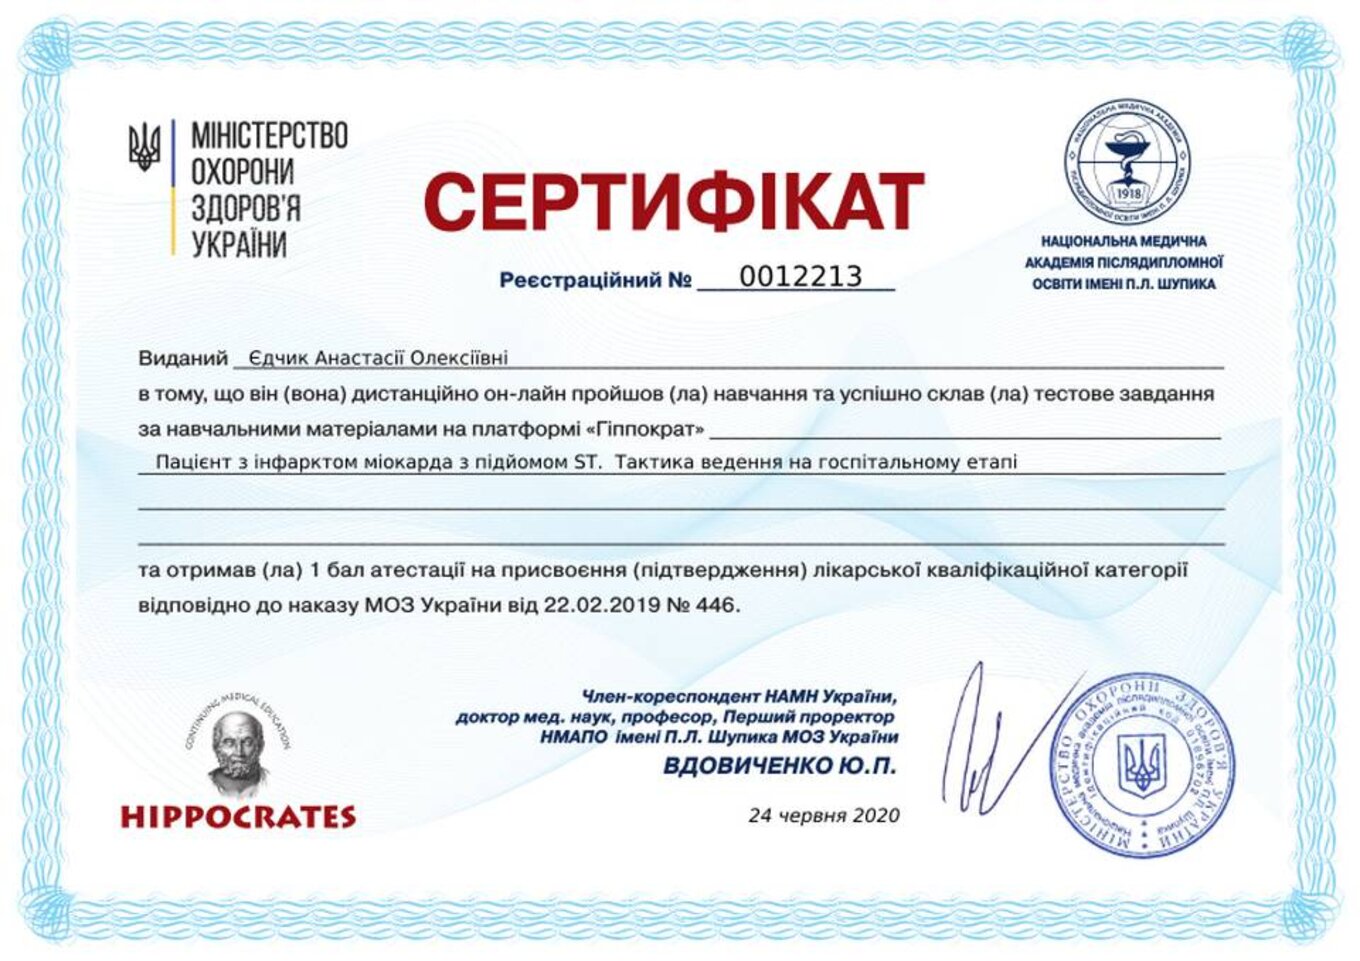 certificates/yedchik-anastasiya-oleksiyivna/erc-edchik-cert-67.jpg